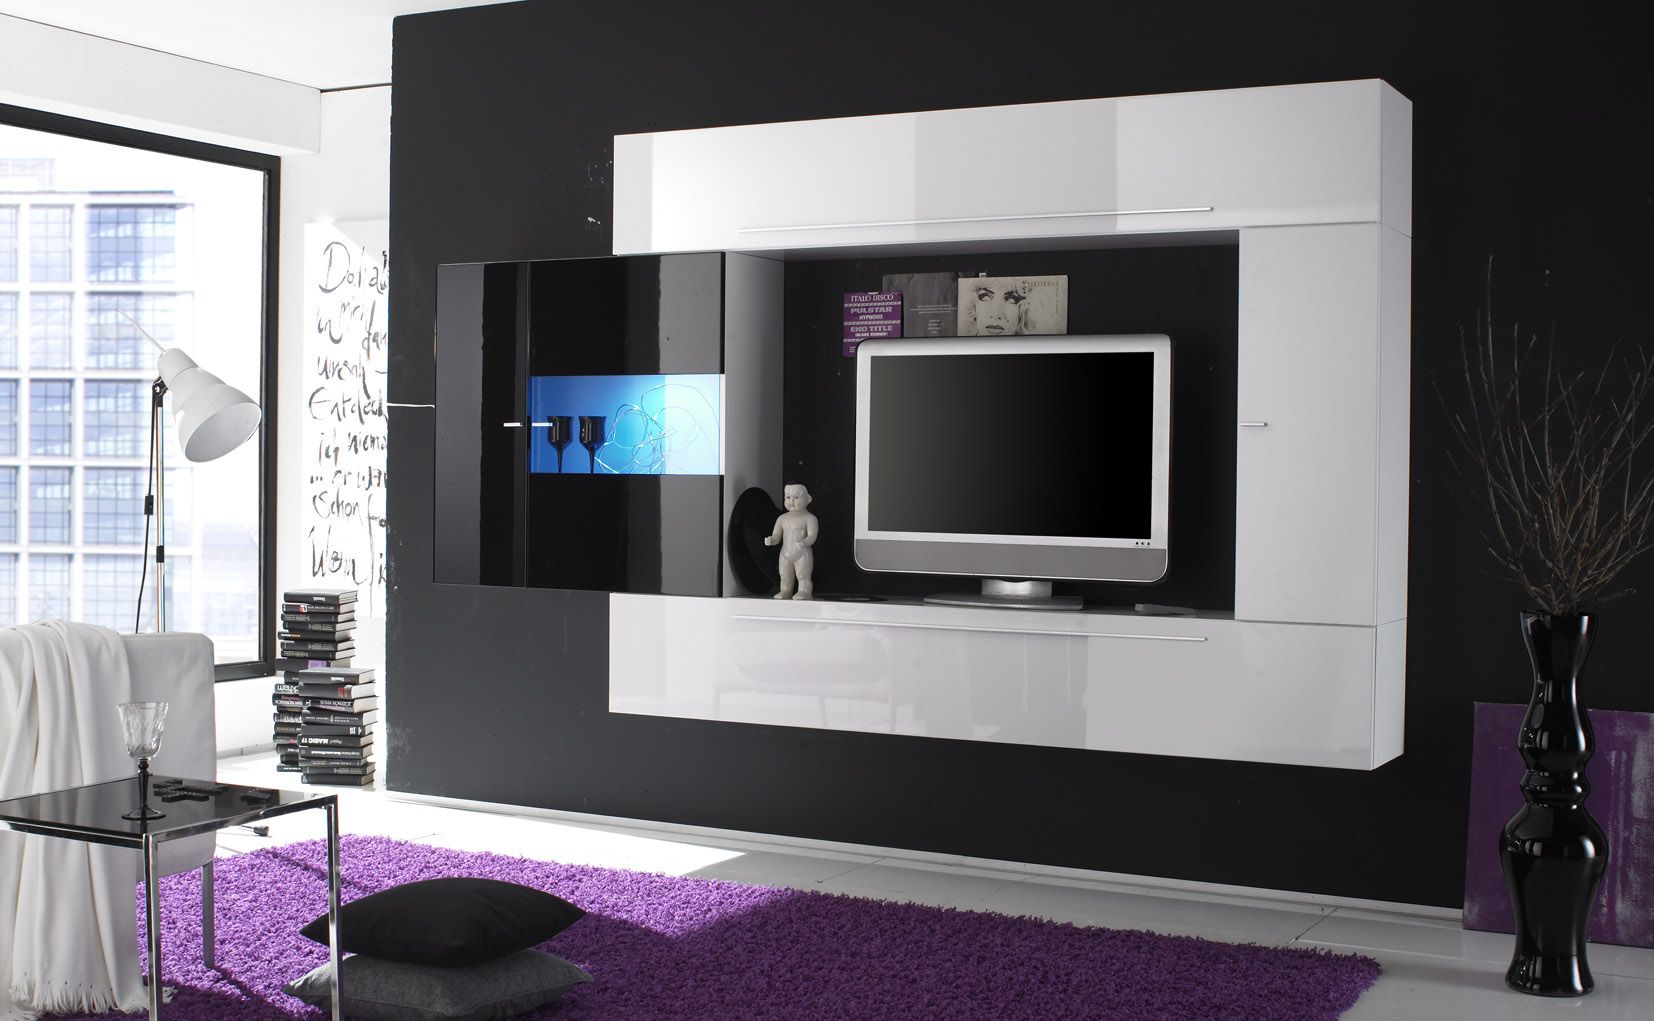 ¿Cómo decorar un mueble de televisión de forma creativa y original?